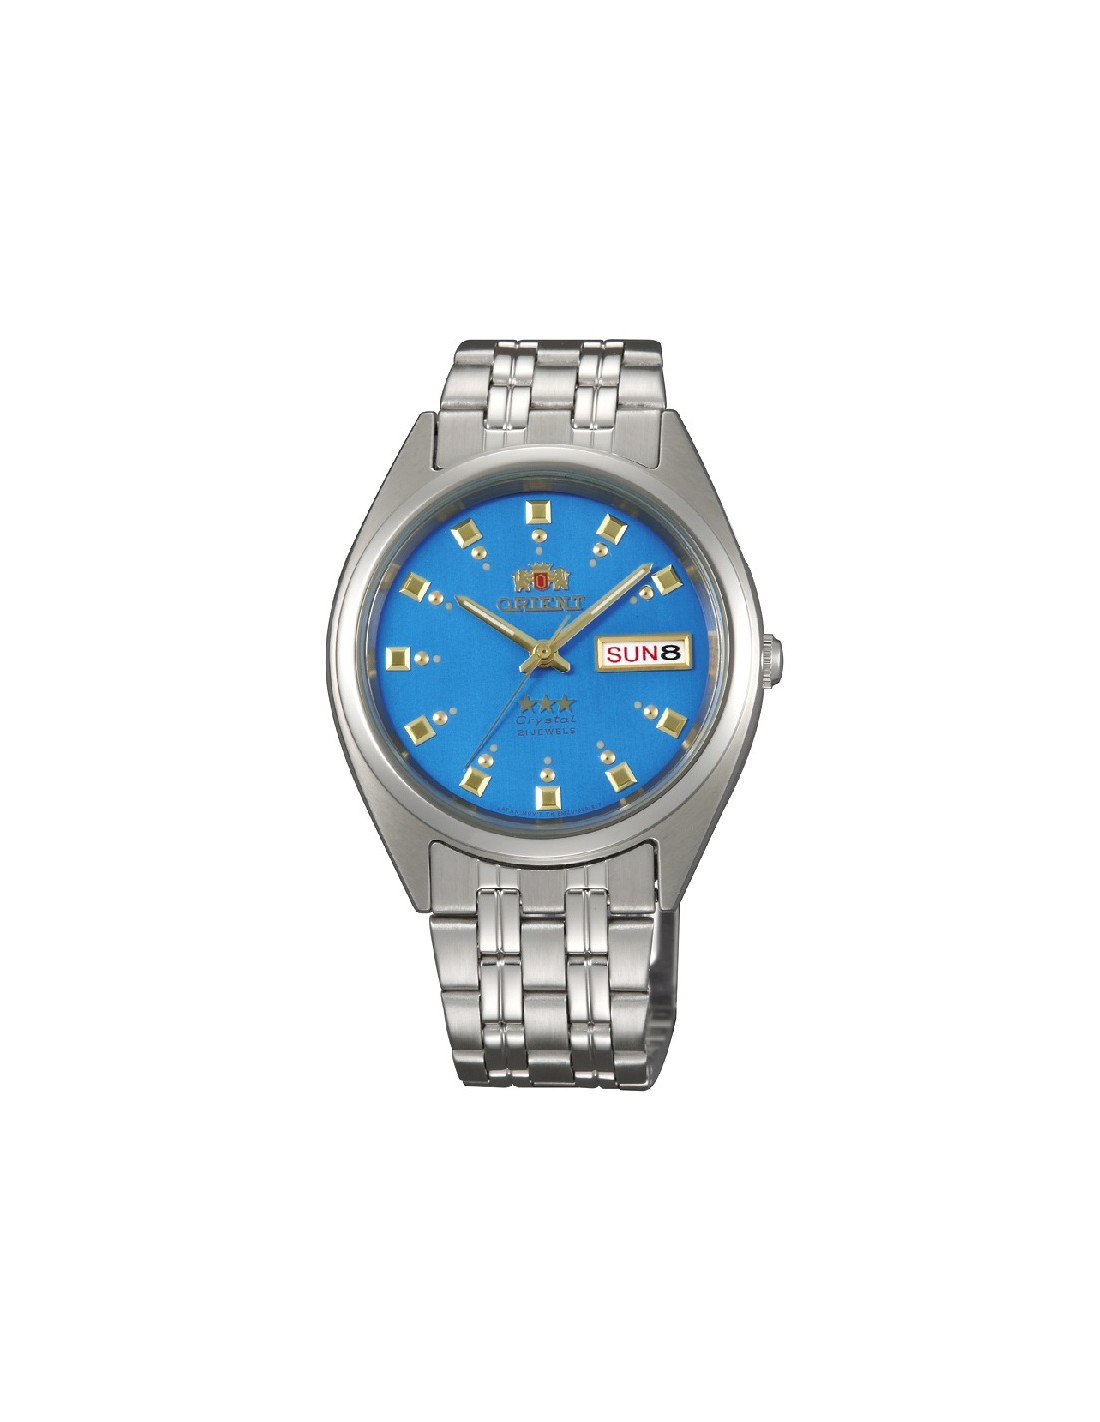 Reloj Orient Fab00007w Automatico Hombre Agente Oficial